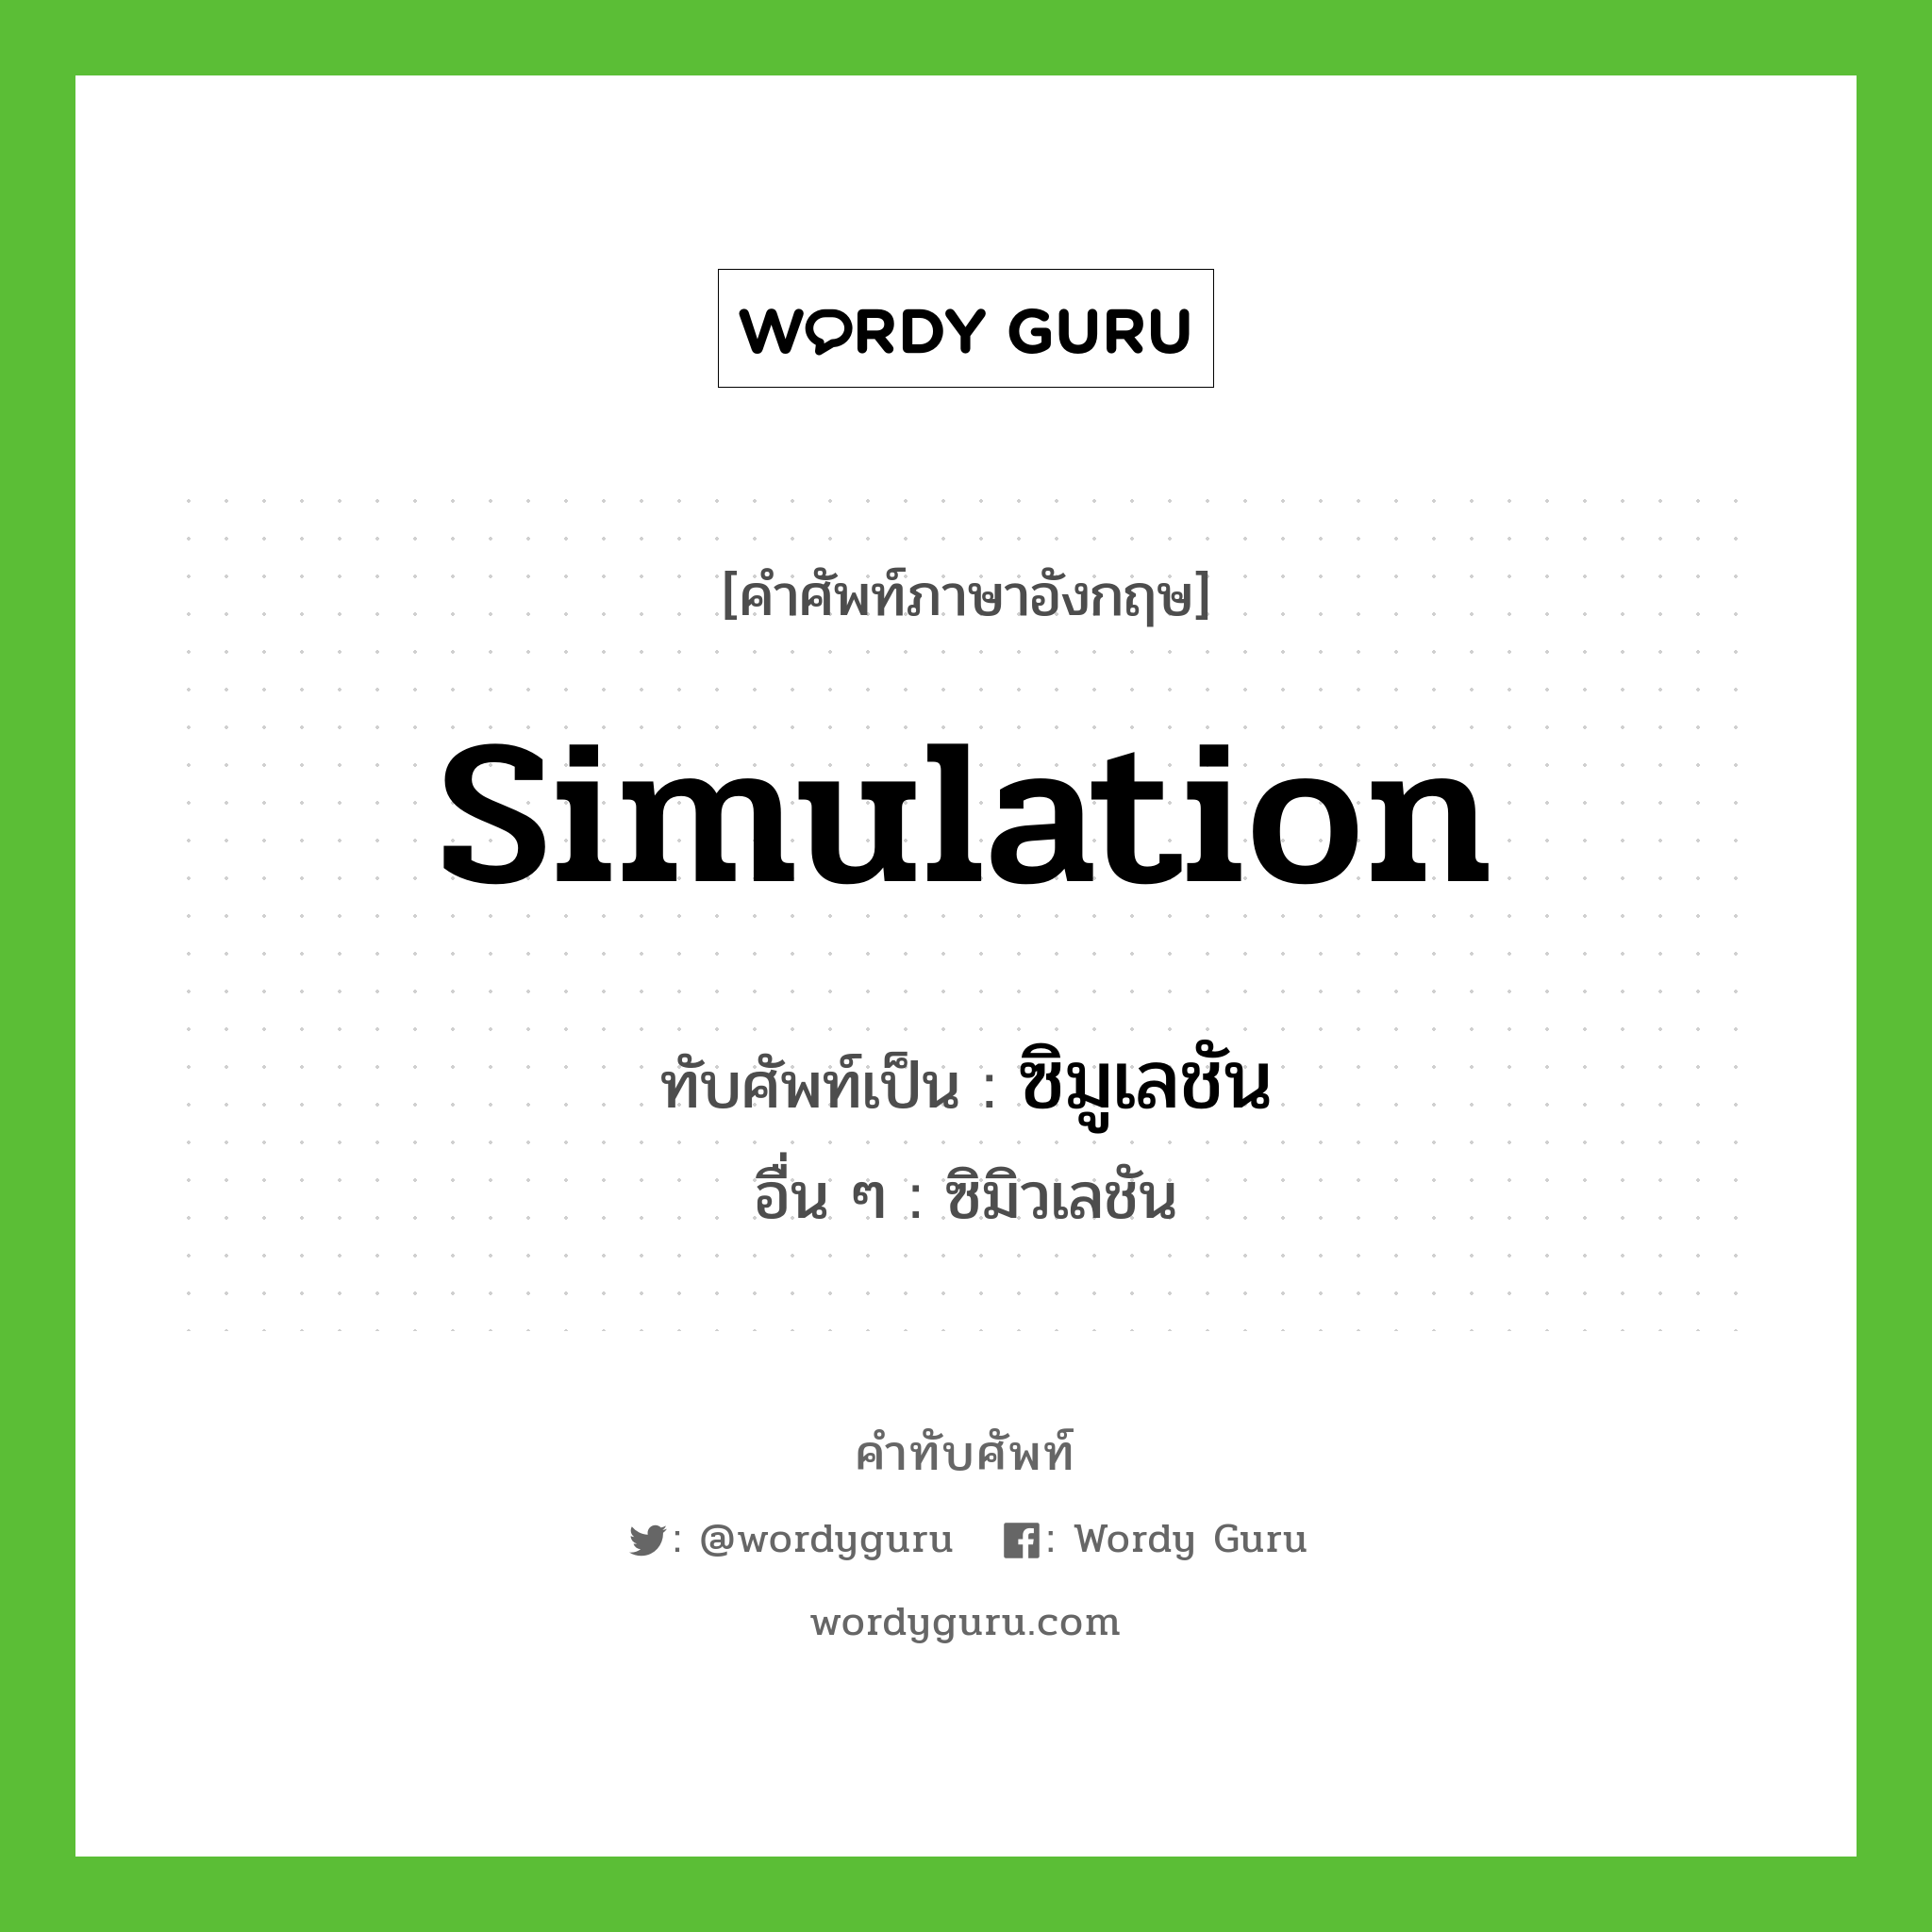 ซิมูเลชัน เขียนอย่างไร?, คำศัพท์ภาษาอังกฤษ ซิมูเลชัน ทับศัพท์เป็น simulation อื่น ๆ ซิมิวเลชัน